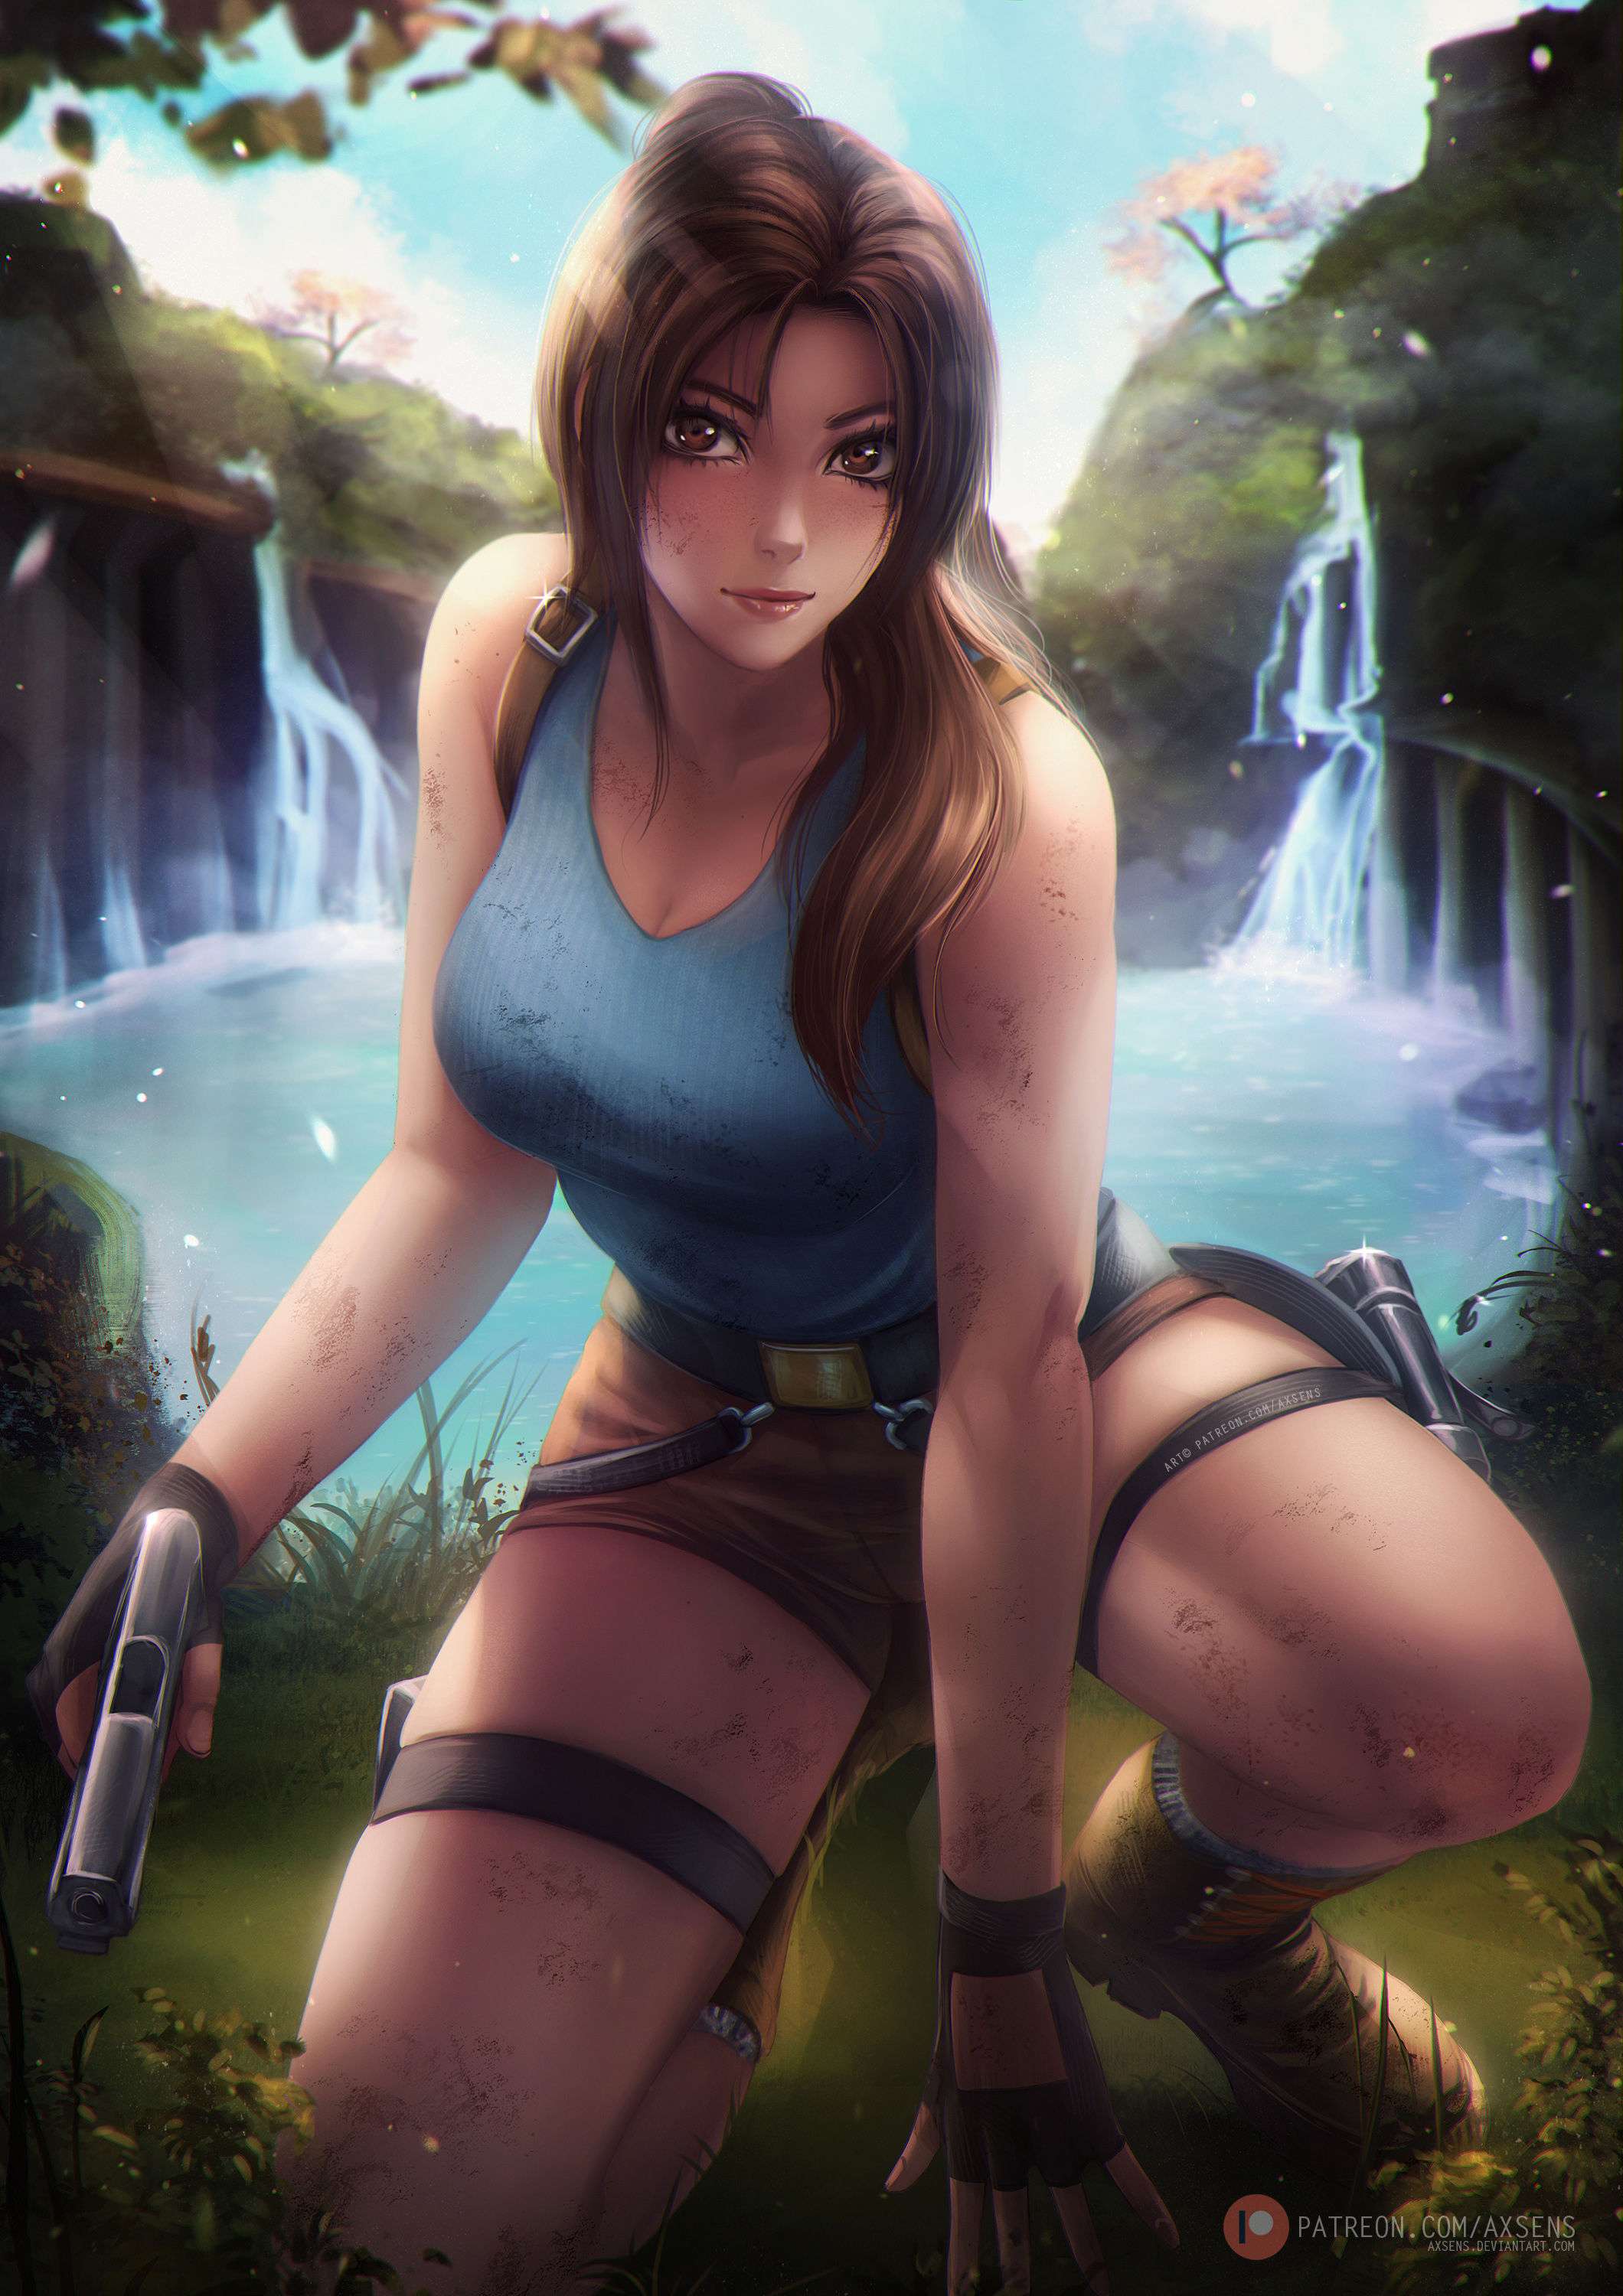 General 2120x3000 Axsens Lara Croft (Tomb Raider) women CGI digital art gun portrait display